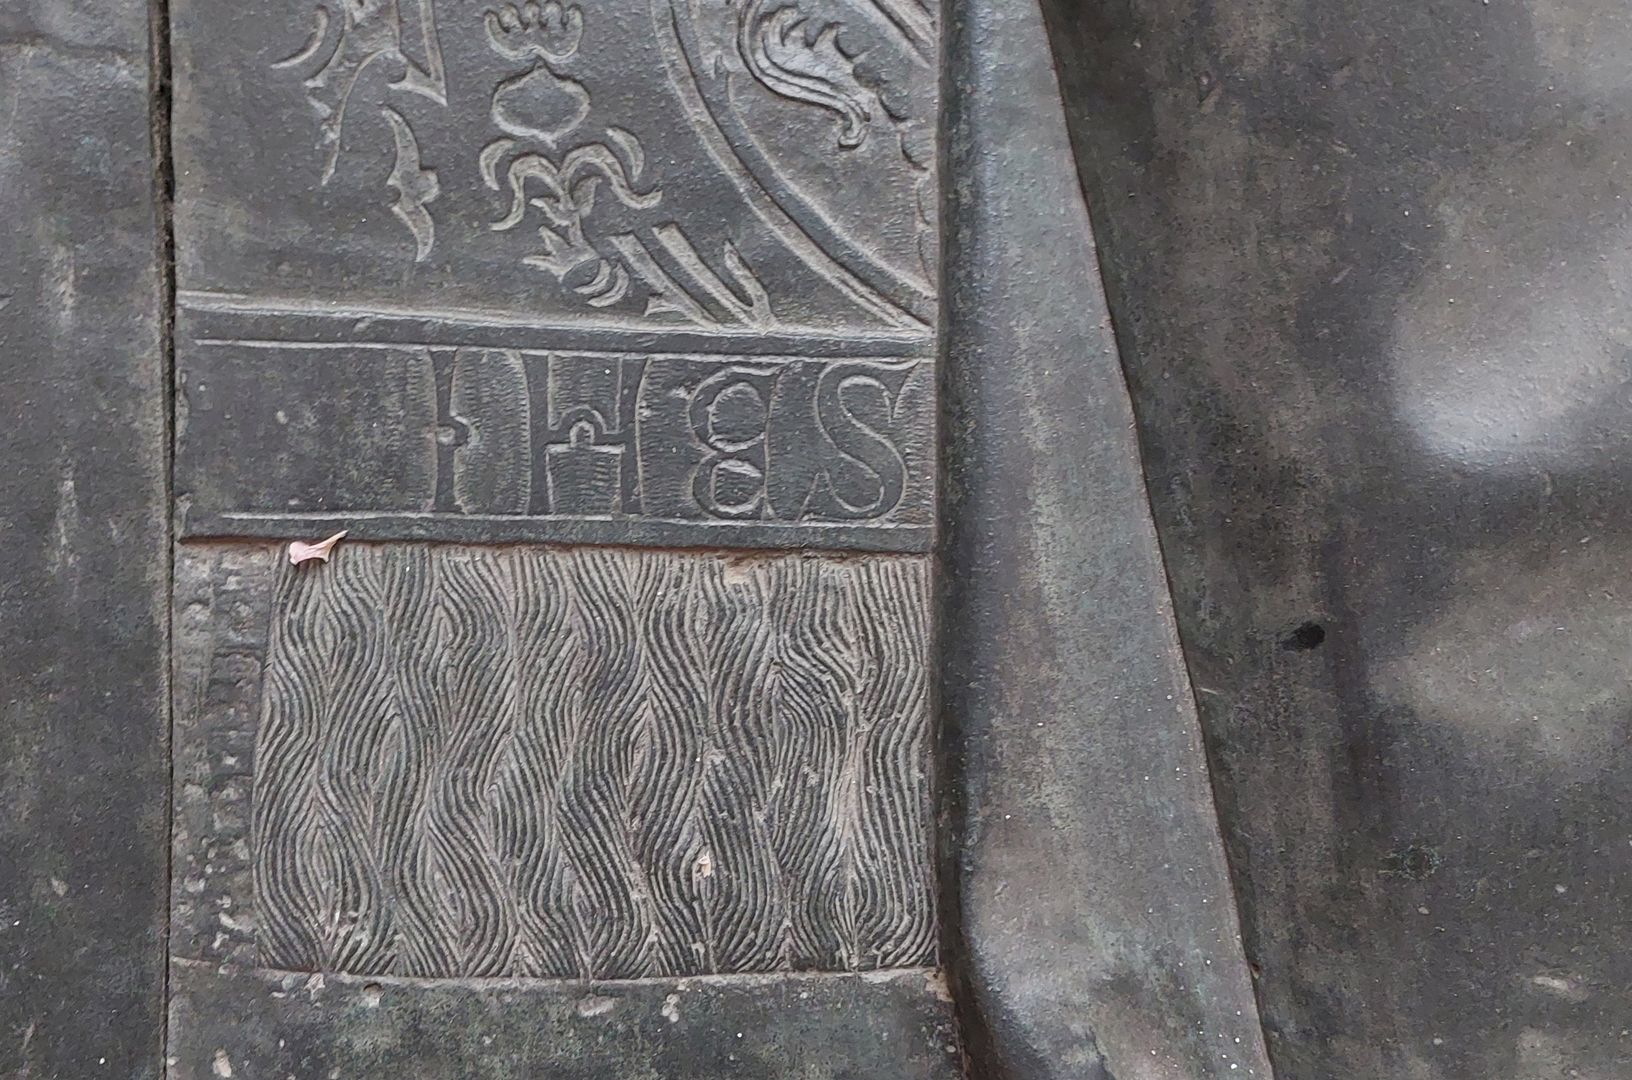 Grabplatte der Herzogin Sophia von Mecklenburg, Prinzessin von Pommern linke mittlere Plattenpartie, Vorhangmuster und Inschrift "IHES"